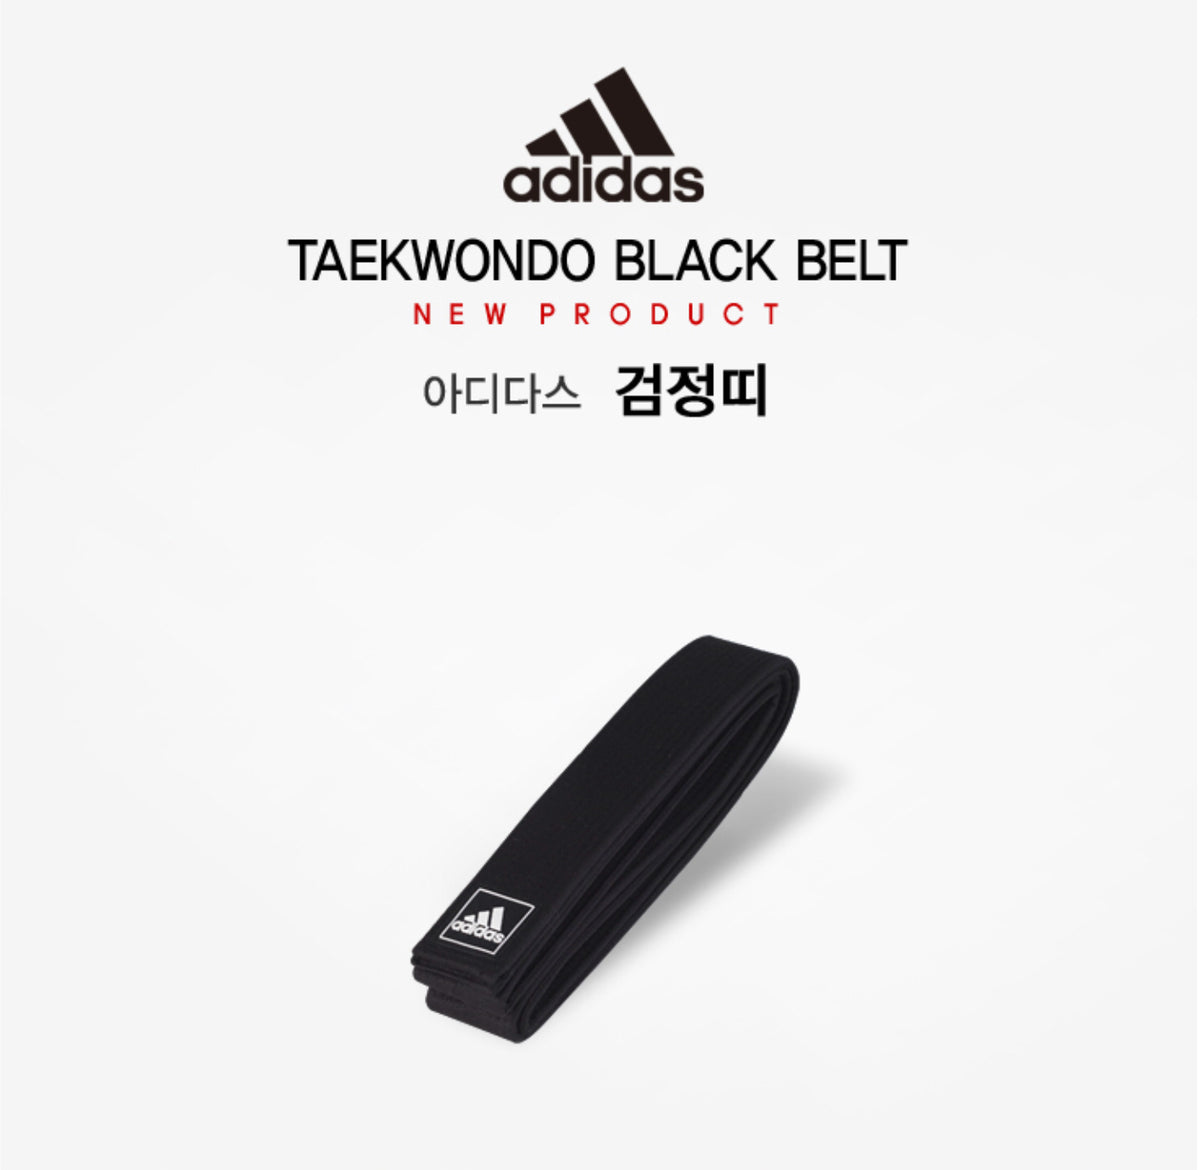 adidas taekwondo black belt